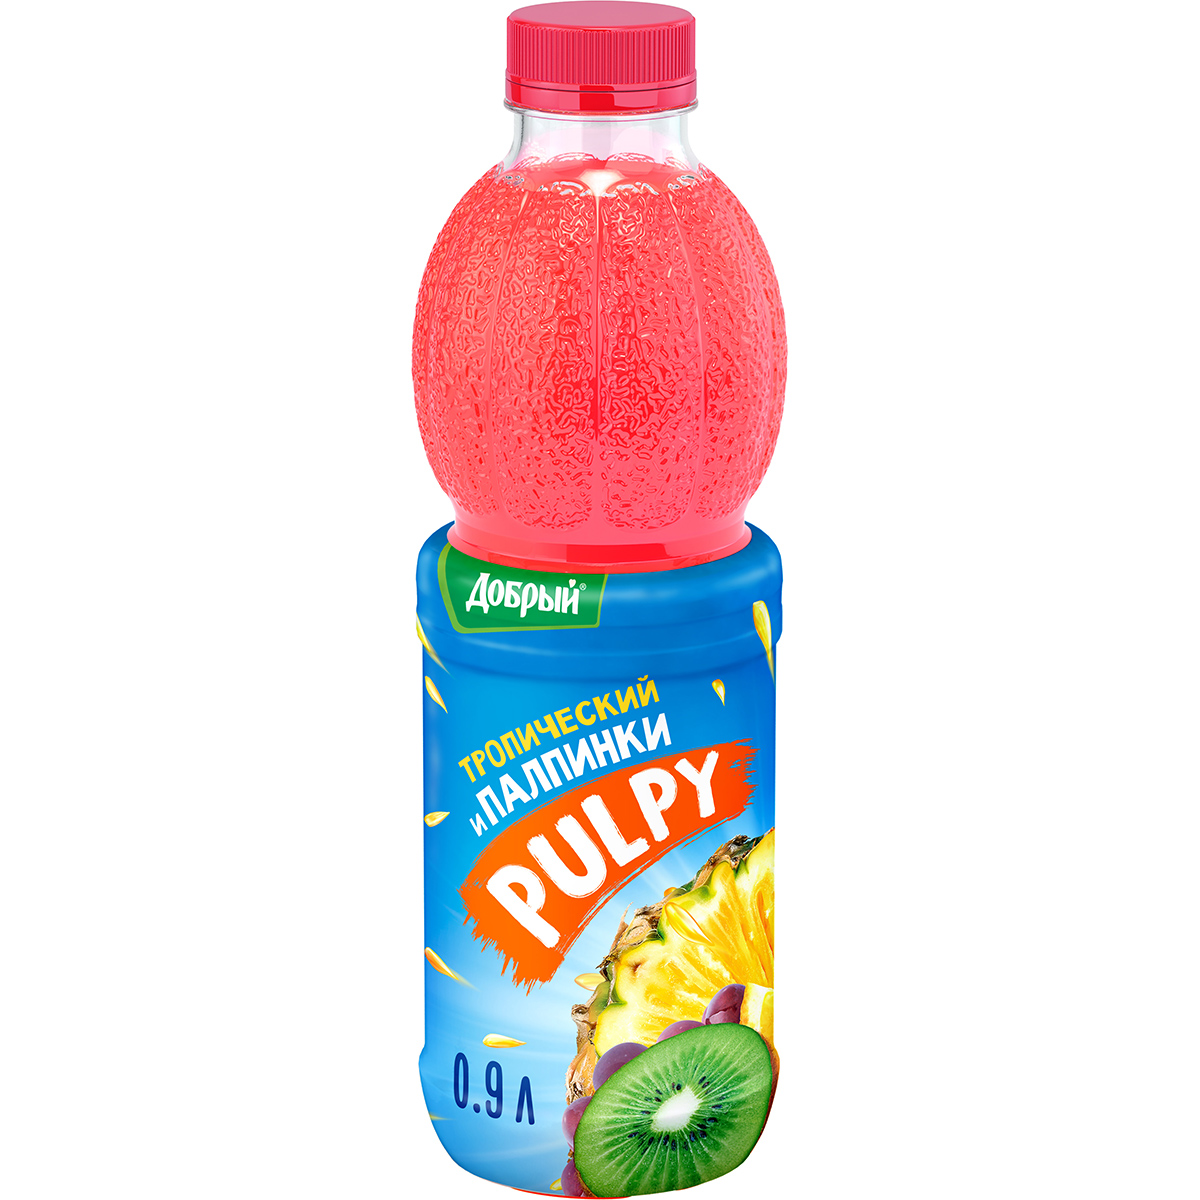 Напиток Pulpy сокосодержащий Тропический с мякотью 0,9 л напиток сокосодержащий pulpy вишня 450 мл